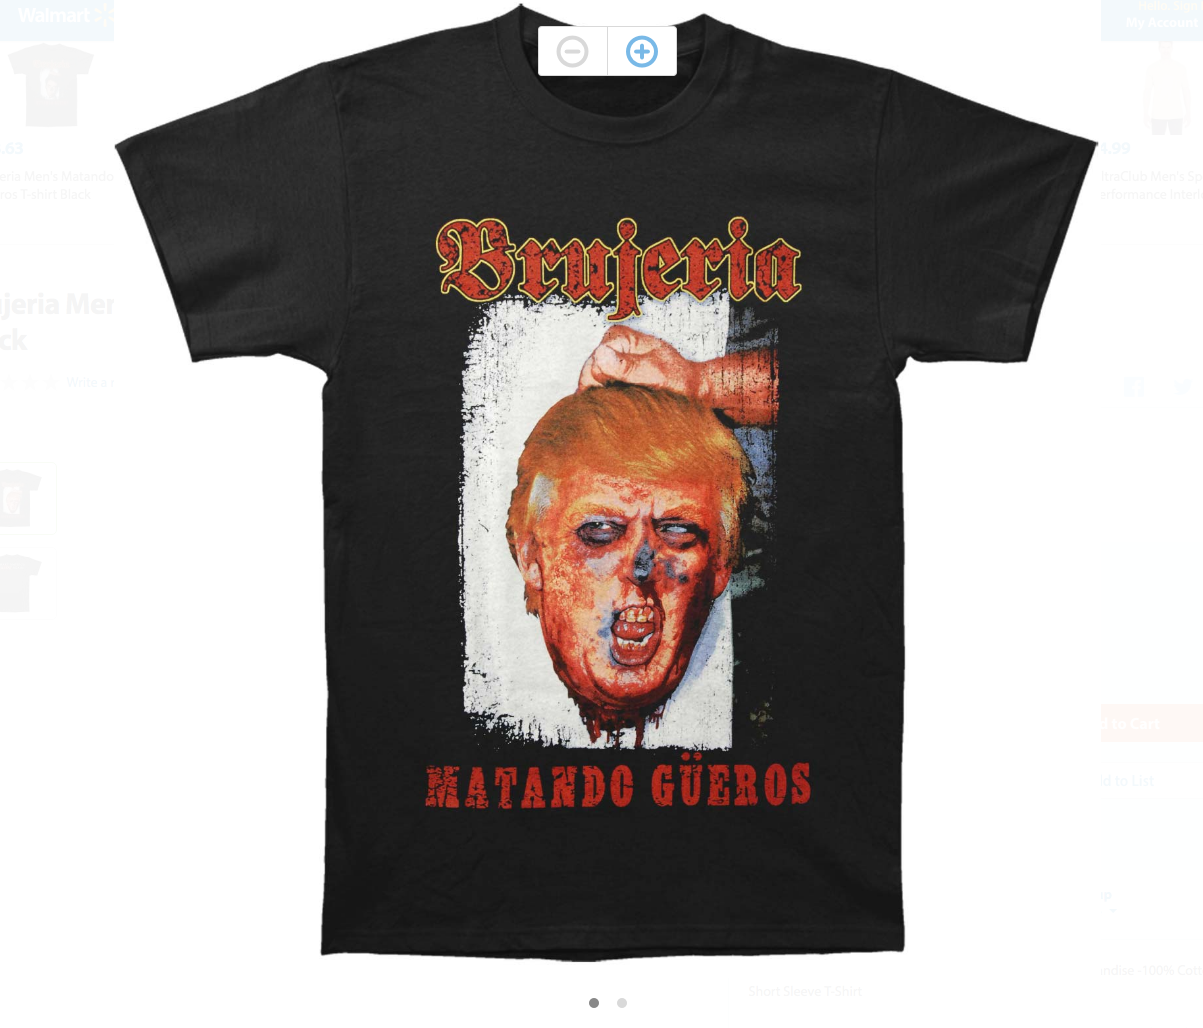 brujeria-shirt-make-america-hate-again